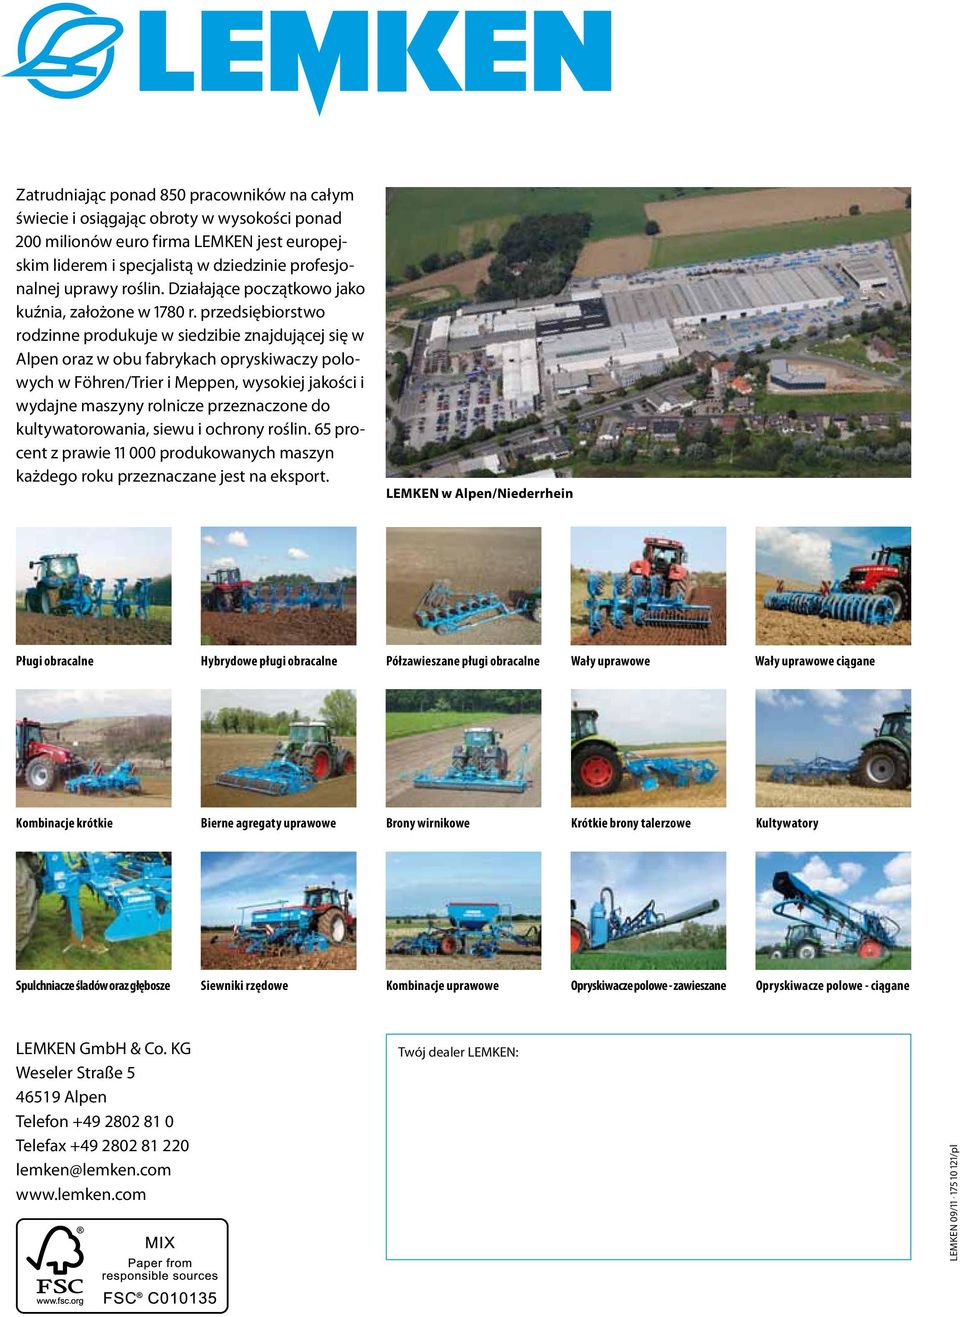 przedsiębiorstwo rodzinne produkuje w siedzibie znajdującej się w Alpen oraz w obu fabrykach opryskiwaczy polowych w Föhren/Trier i Meppen, wysokiej jakości i wydajne maszyny rolnicze przeznaczone do